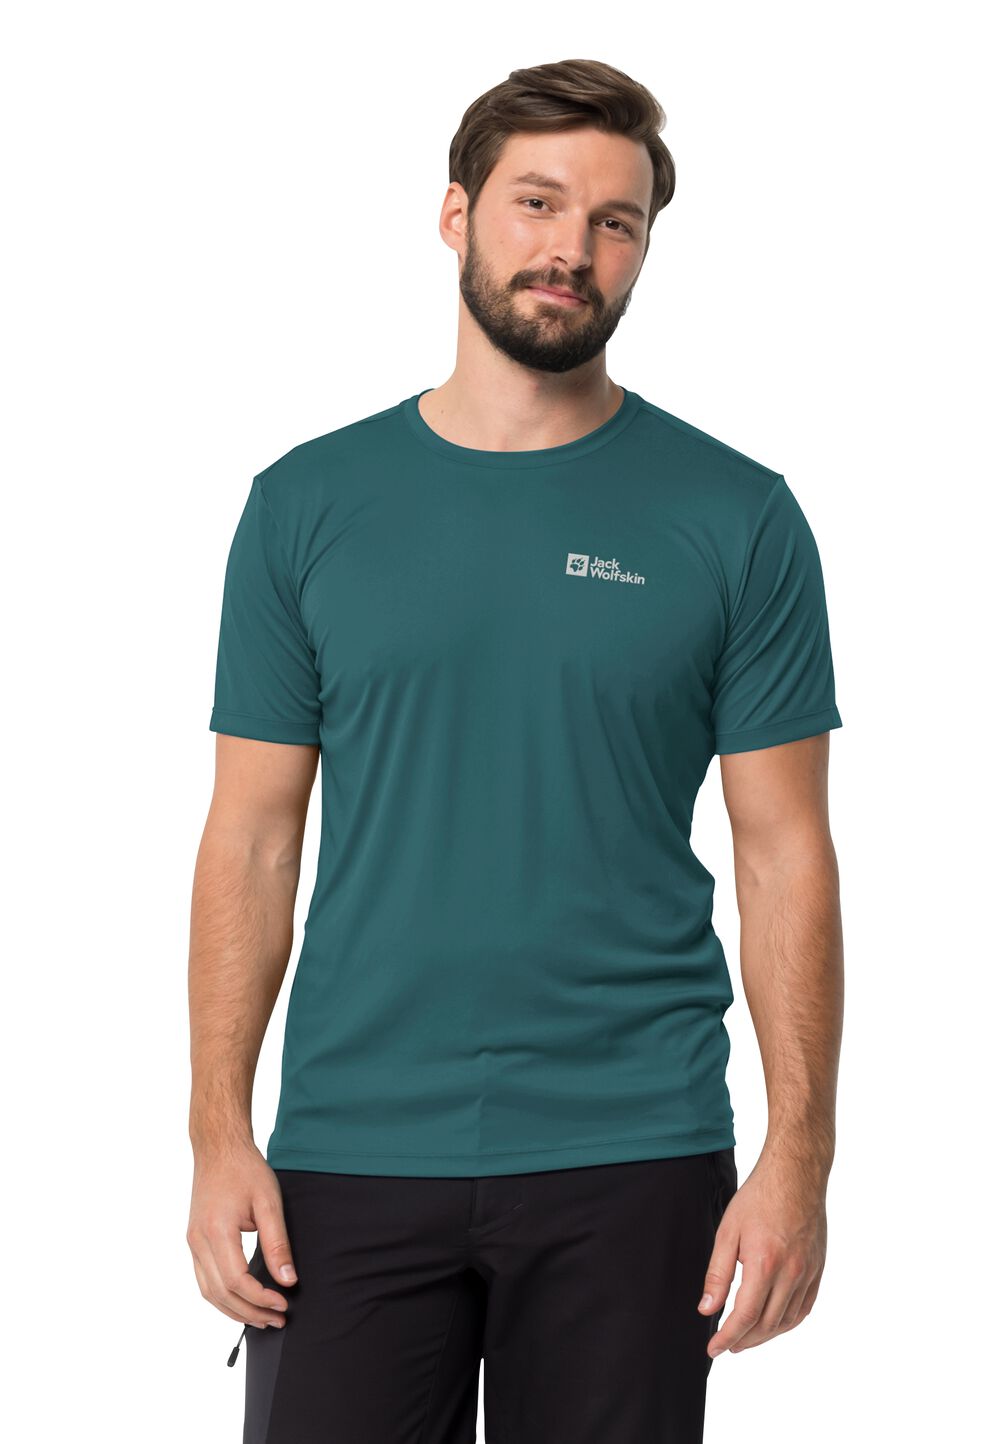 Jack Wolfskin Tech T-Shirt Men Functioneel shirt Heren L emerald